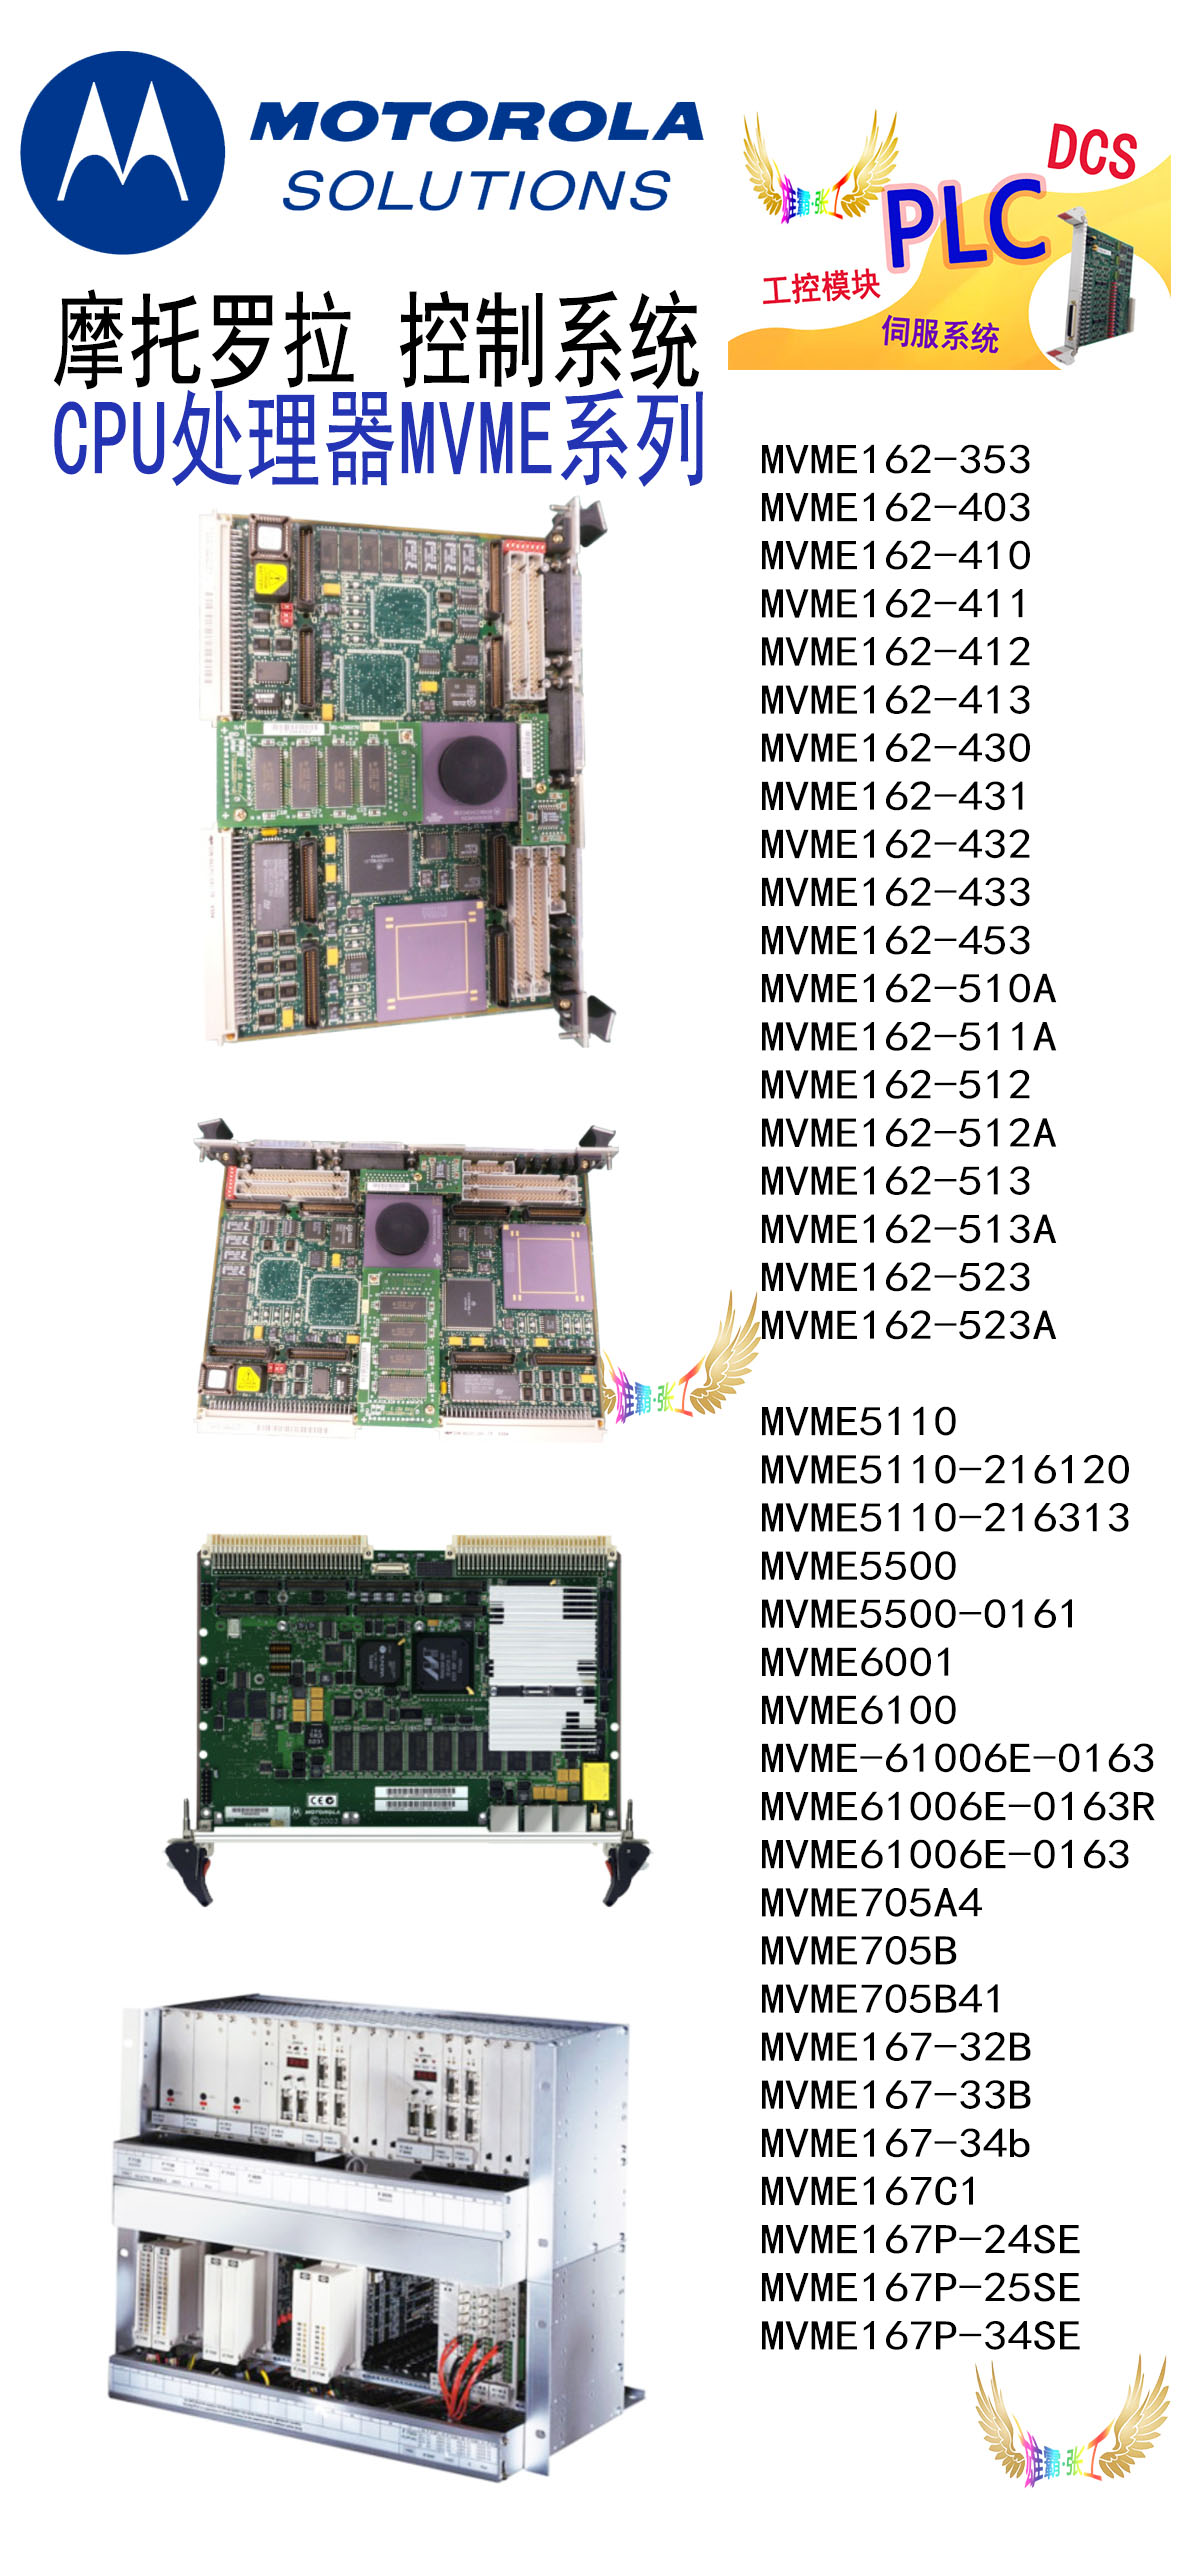 摩托罗拉处理器模块 MVME147-024 VMIVME系列 Motorola 